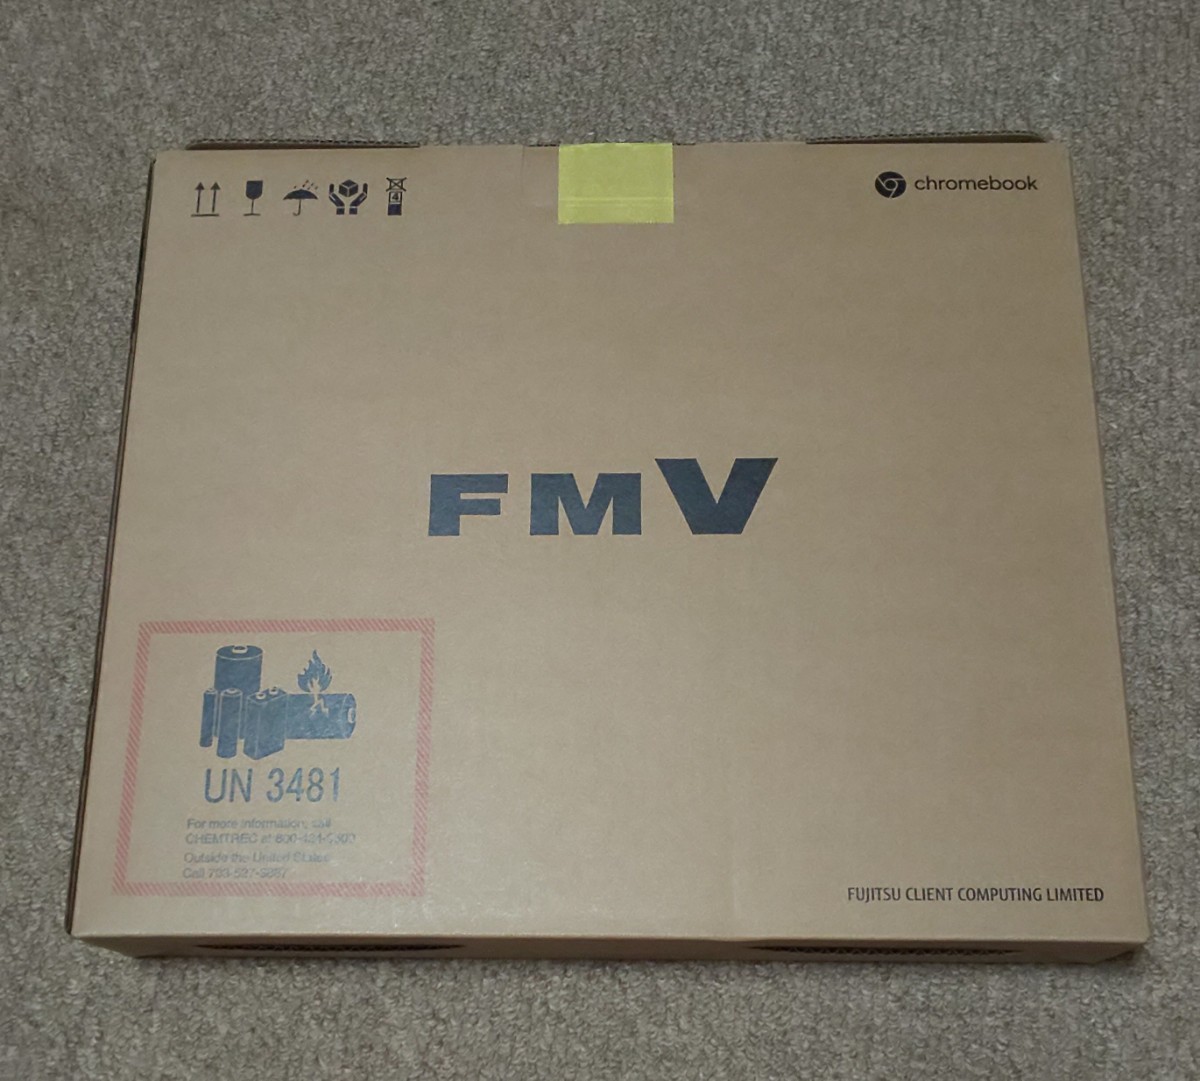 富士通 FMV Chromebook WM1/F3 ノートパソコン - 5